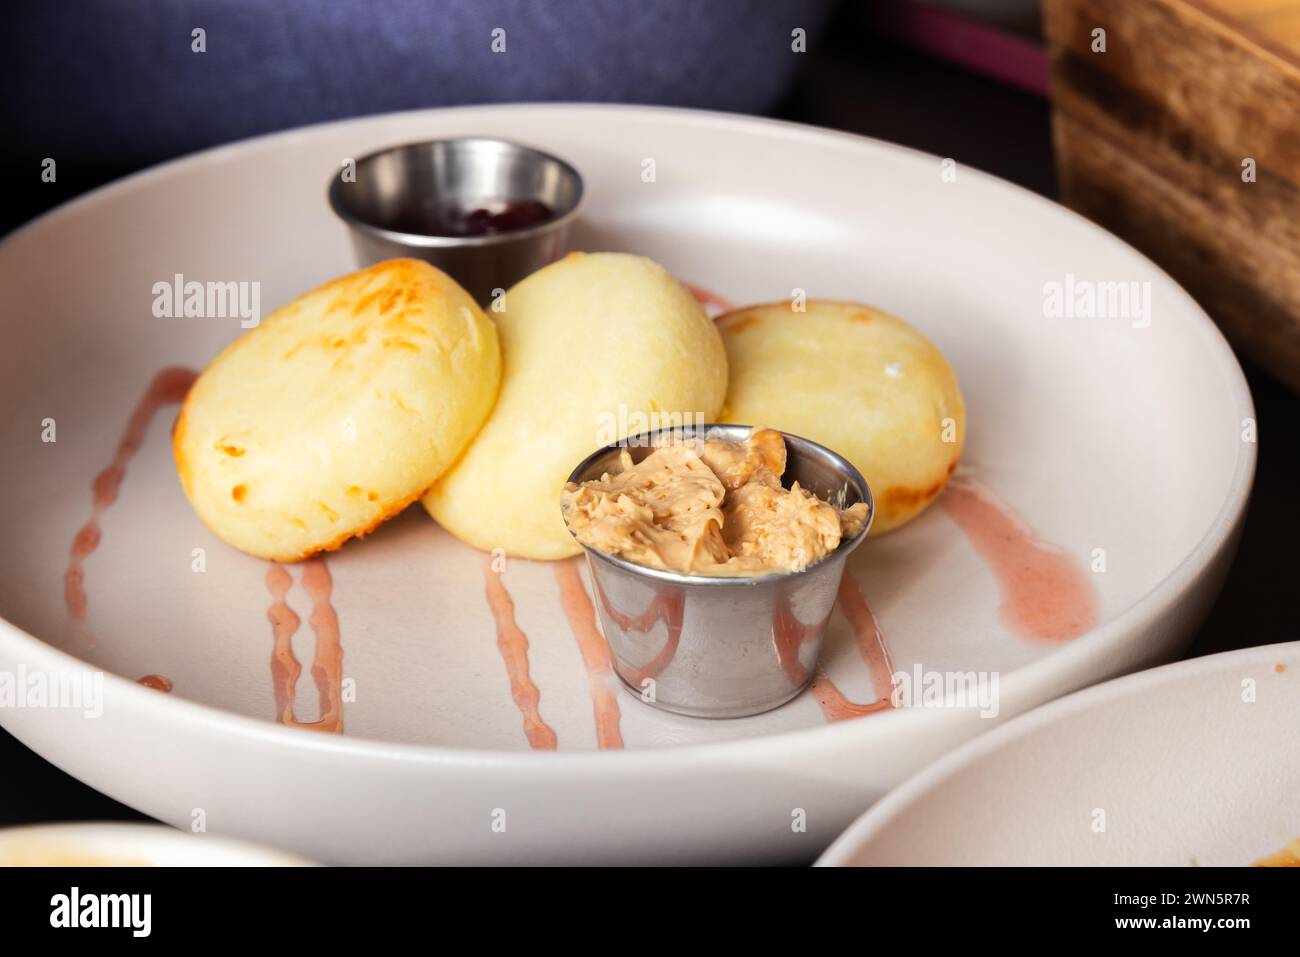 Colazione slava. Syrniki servito con marmellata di lamponi e latte condensato bollito. Primo piano con messa a fuoco morbida selettiva Foto Stock